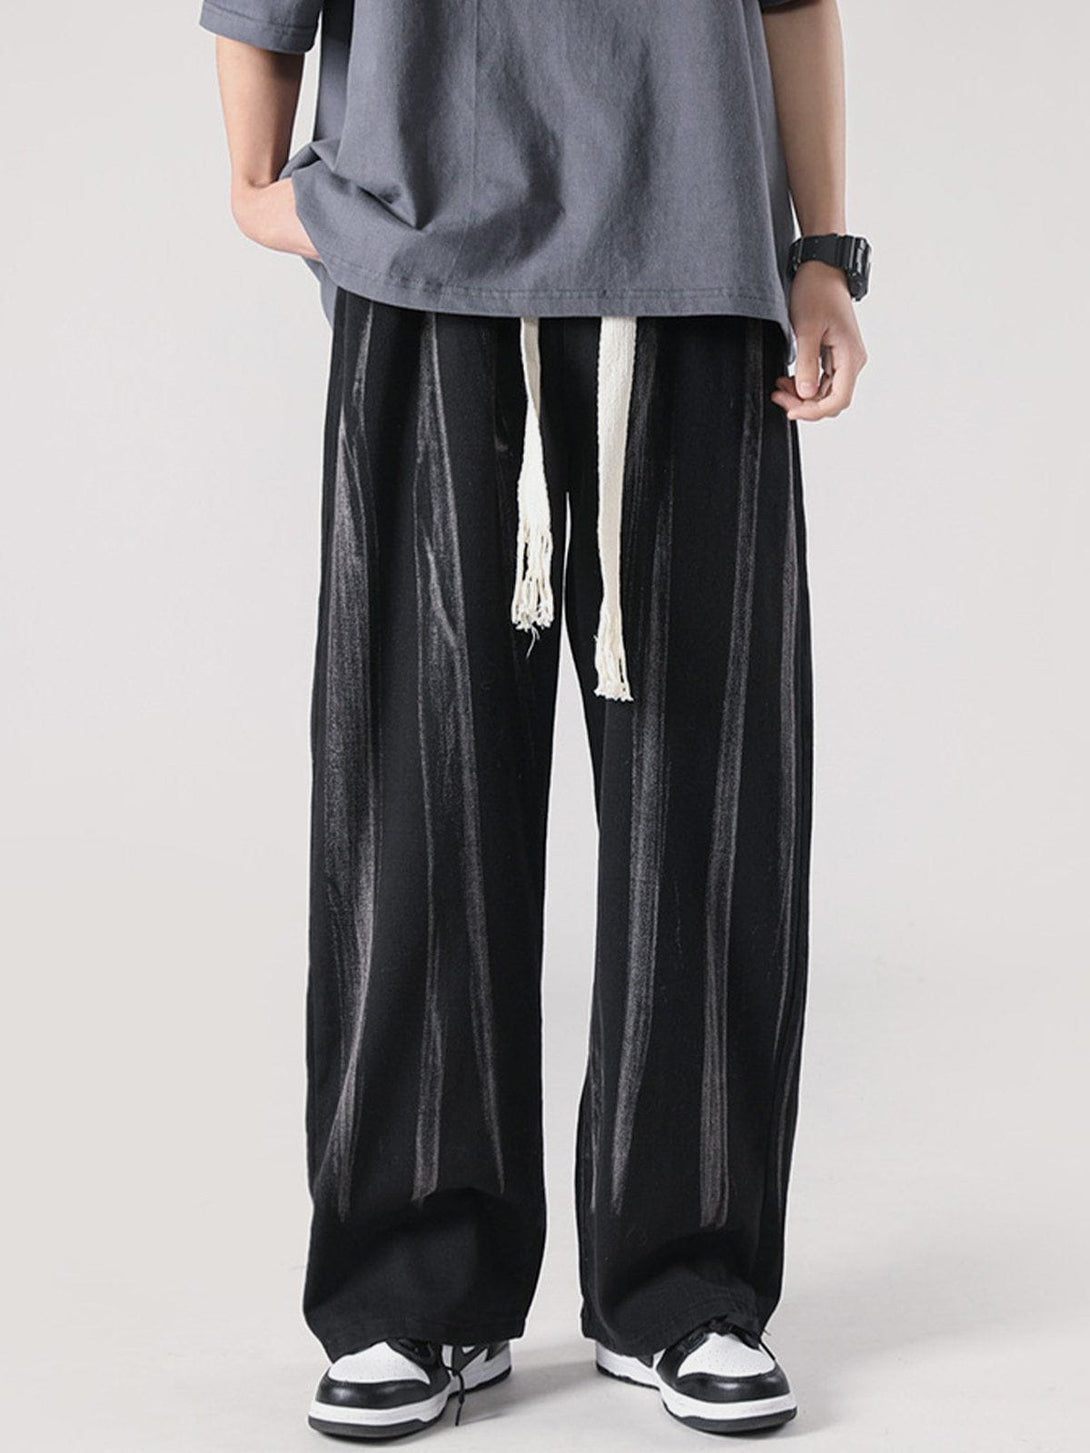 Majesda® - Tie-Dye Drawstring Pants outfit ideas streetwear fashion